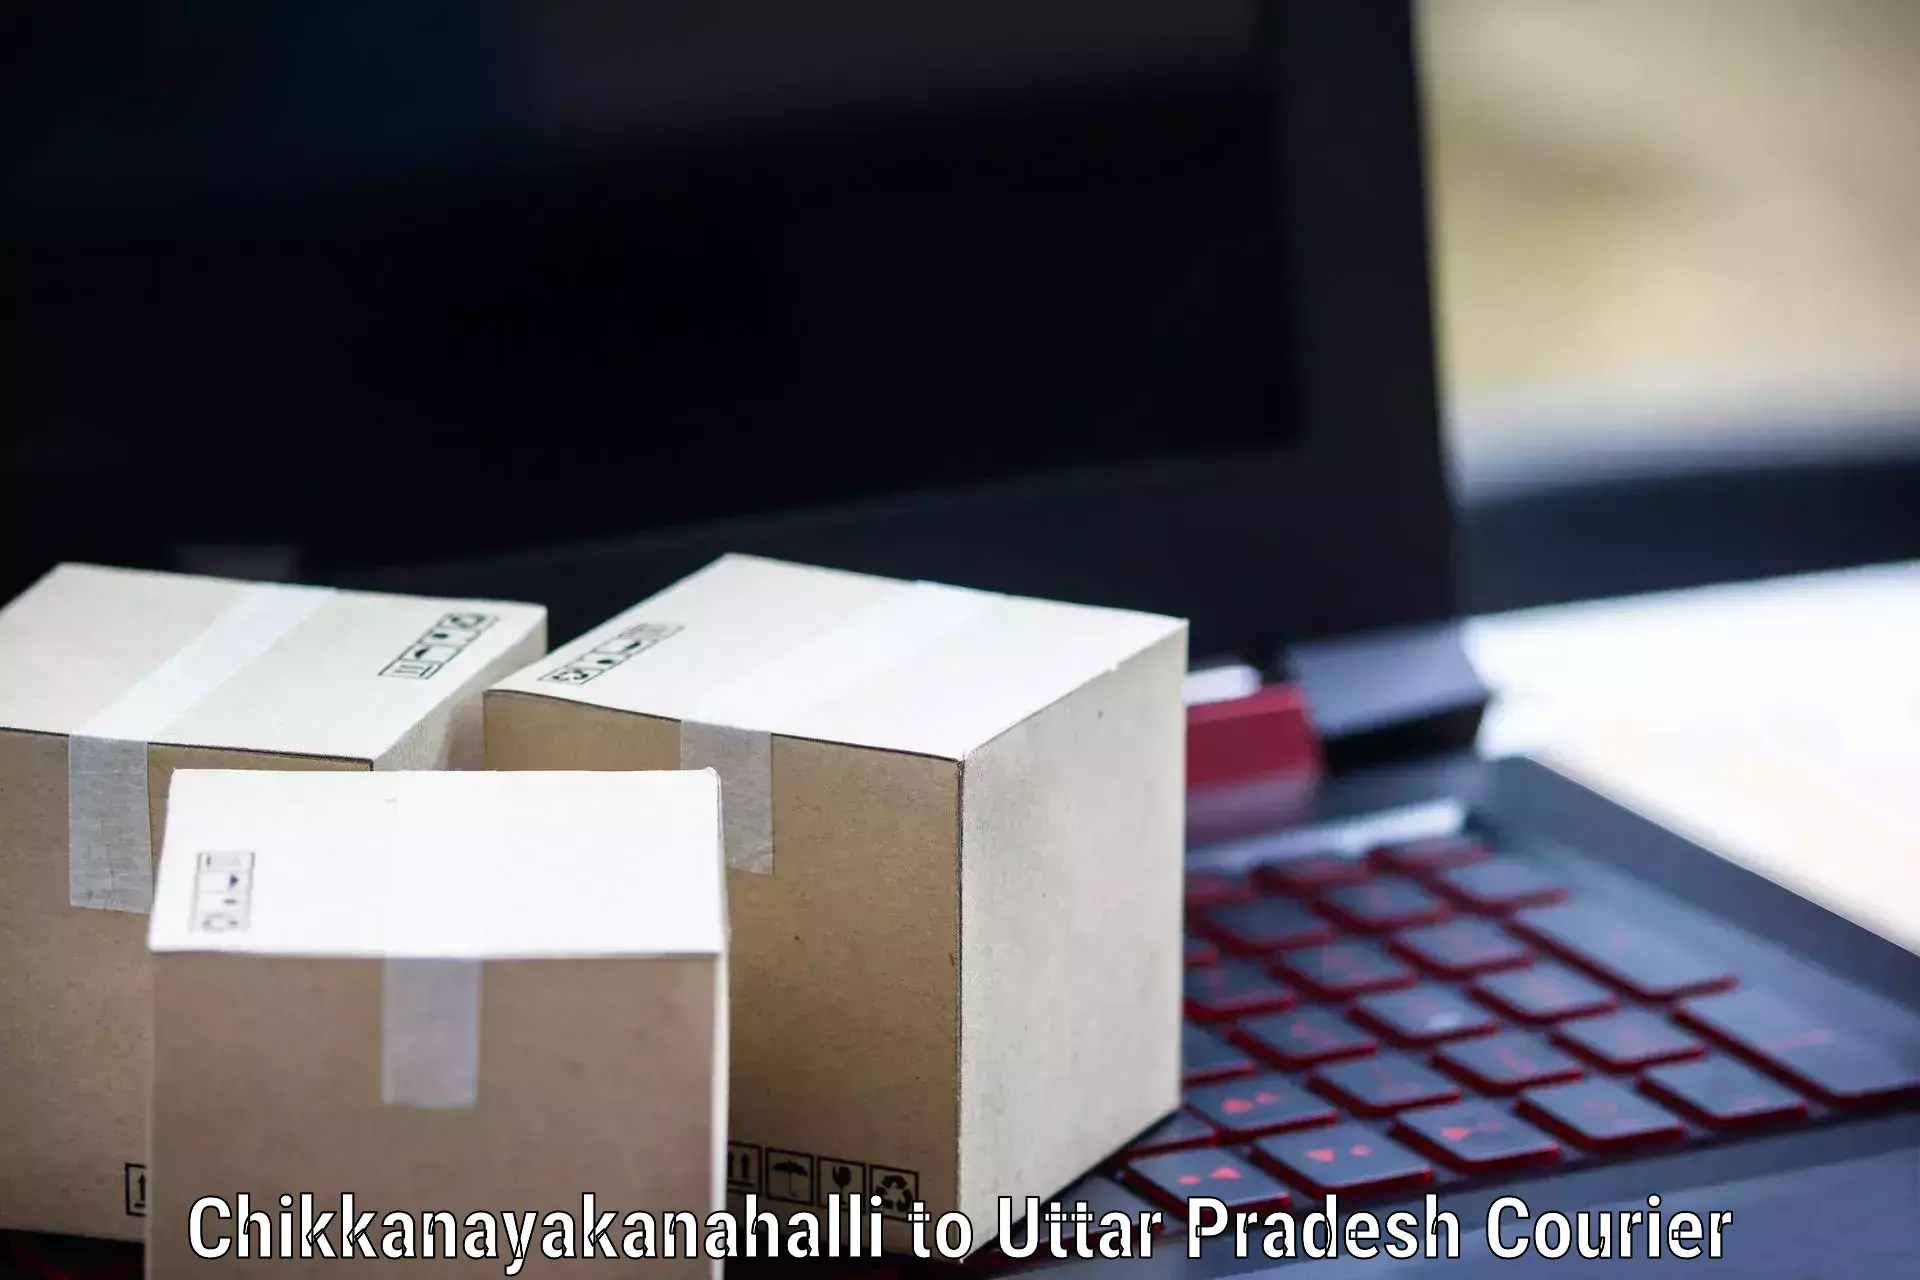 Sustainable delivery practices Chikkanayakanahalli to Dariyabad